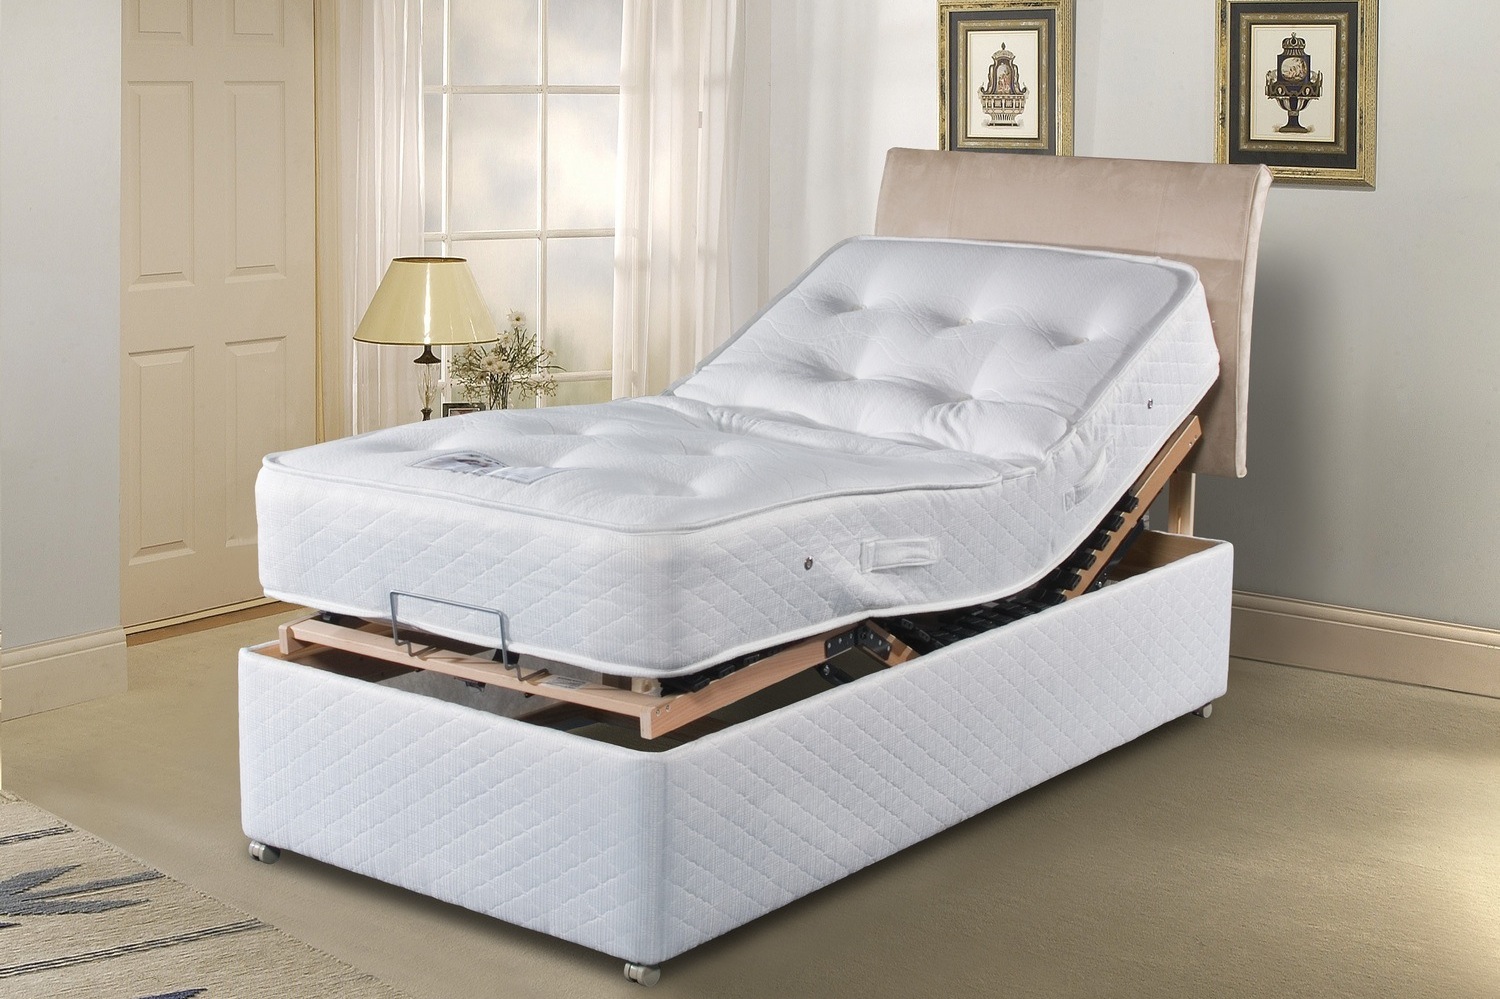 Купить кровать электрическую. Adjustable Bed кровать. Electric Adjustable Beds. Legato кровать. Headboards Sleepeezee.